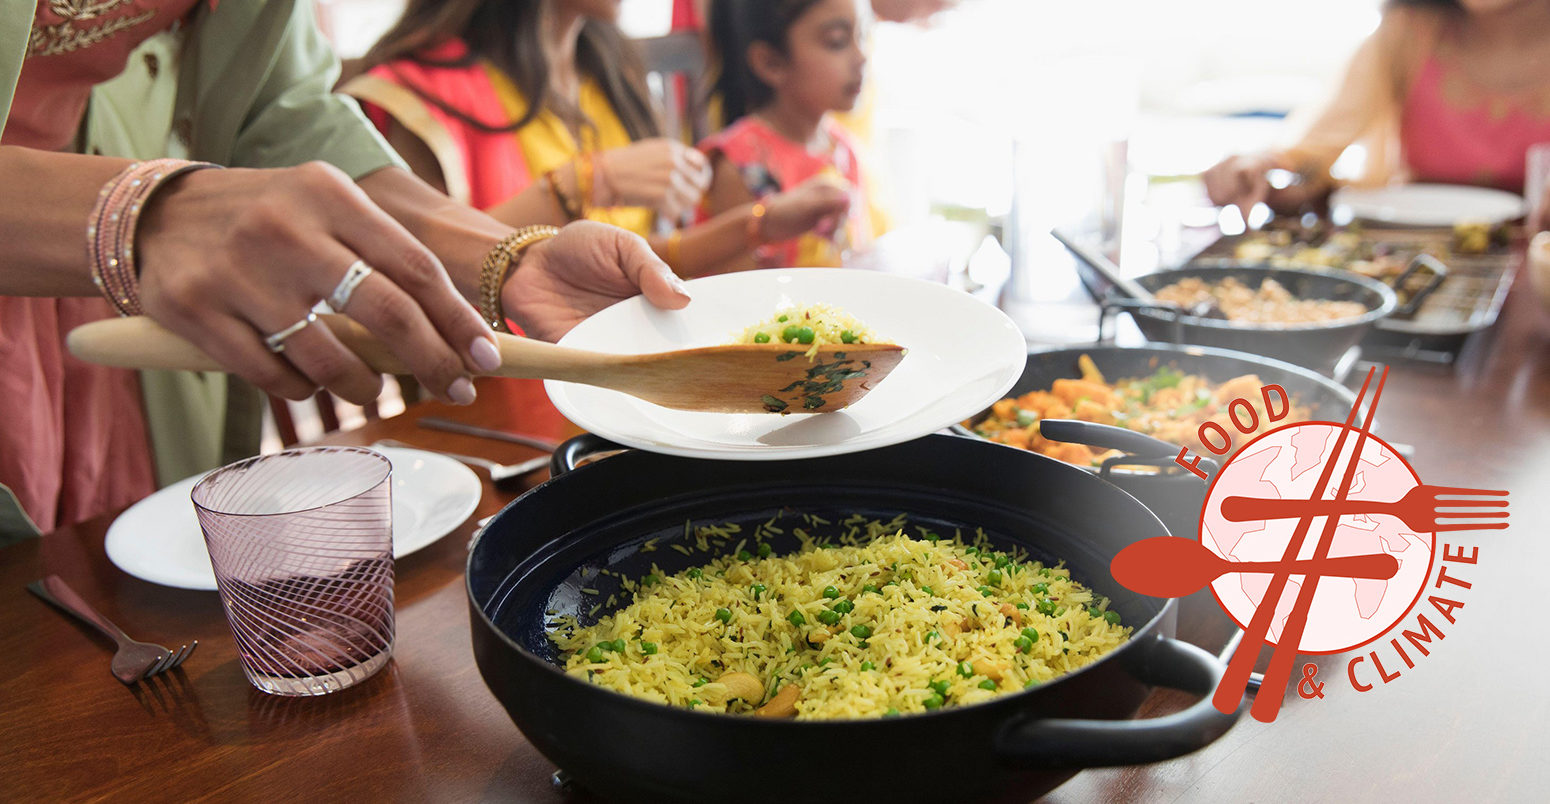 穿着莎丽服的印度妇女在餐桌上服务和吃食物。图片来源:Barry Diomede / Alamy Stock Photo。